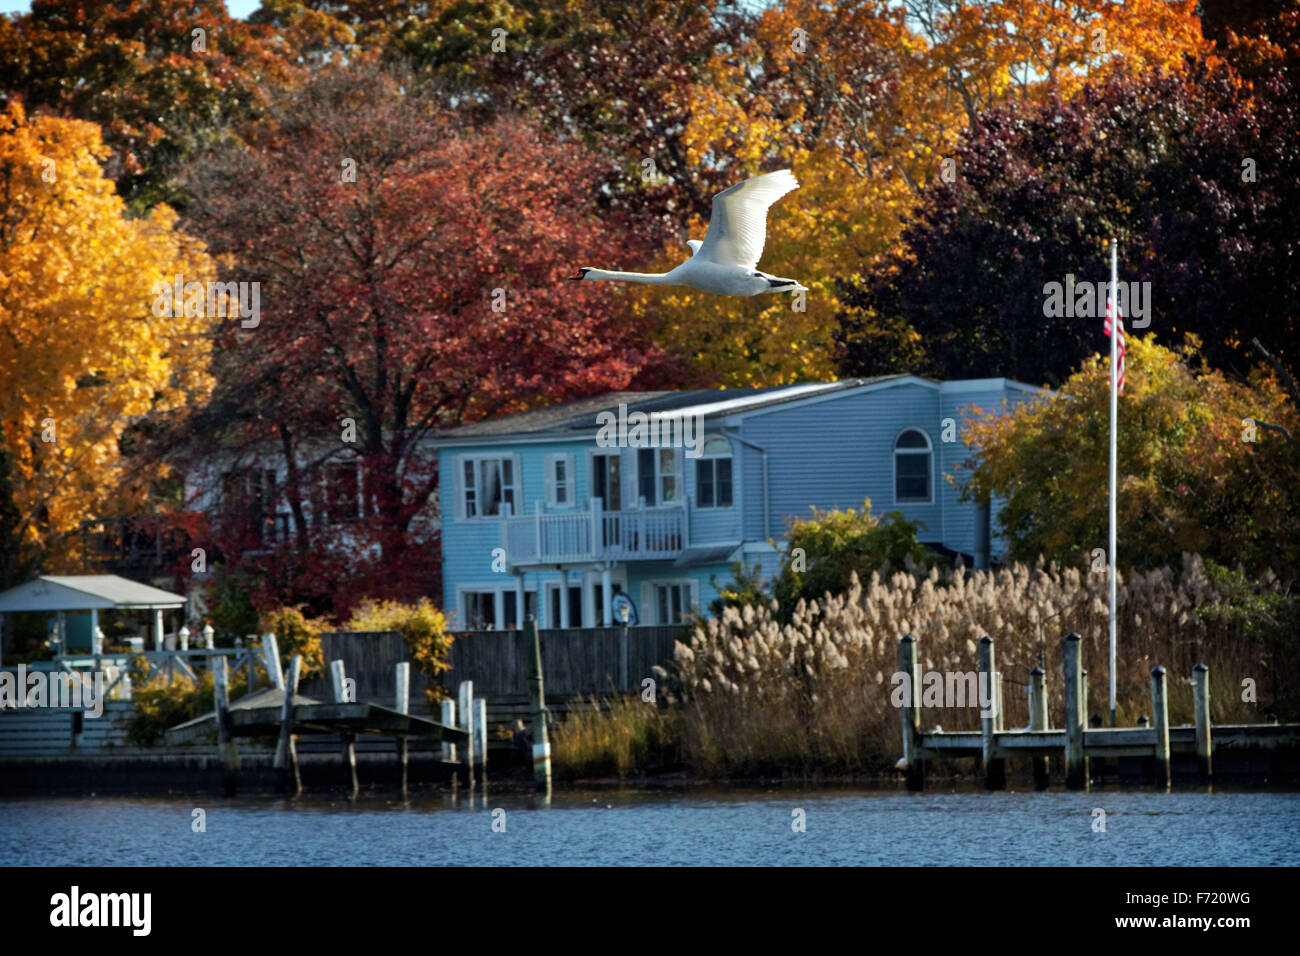 Eine Herbstszene in East Islip, New York als Schwan fliegt vorbei an Häusern auf der Connetquot Fluss während Herbstwetter dreht braun verlässt Stockfoto